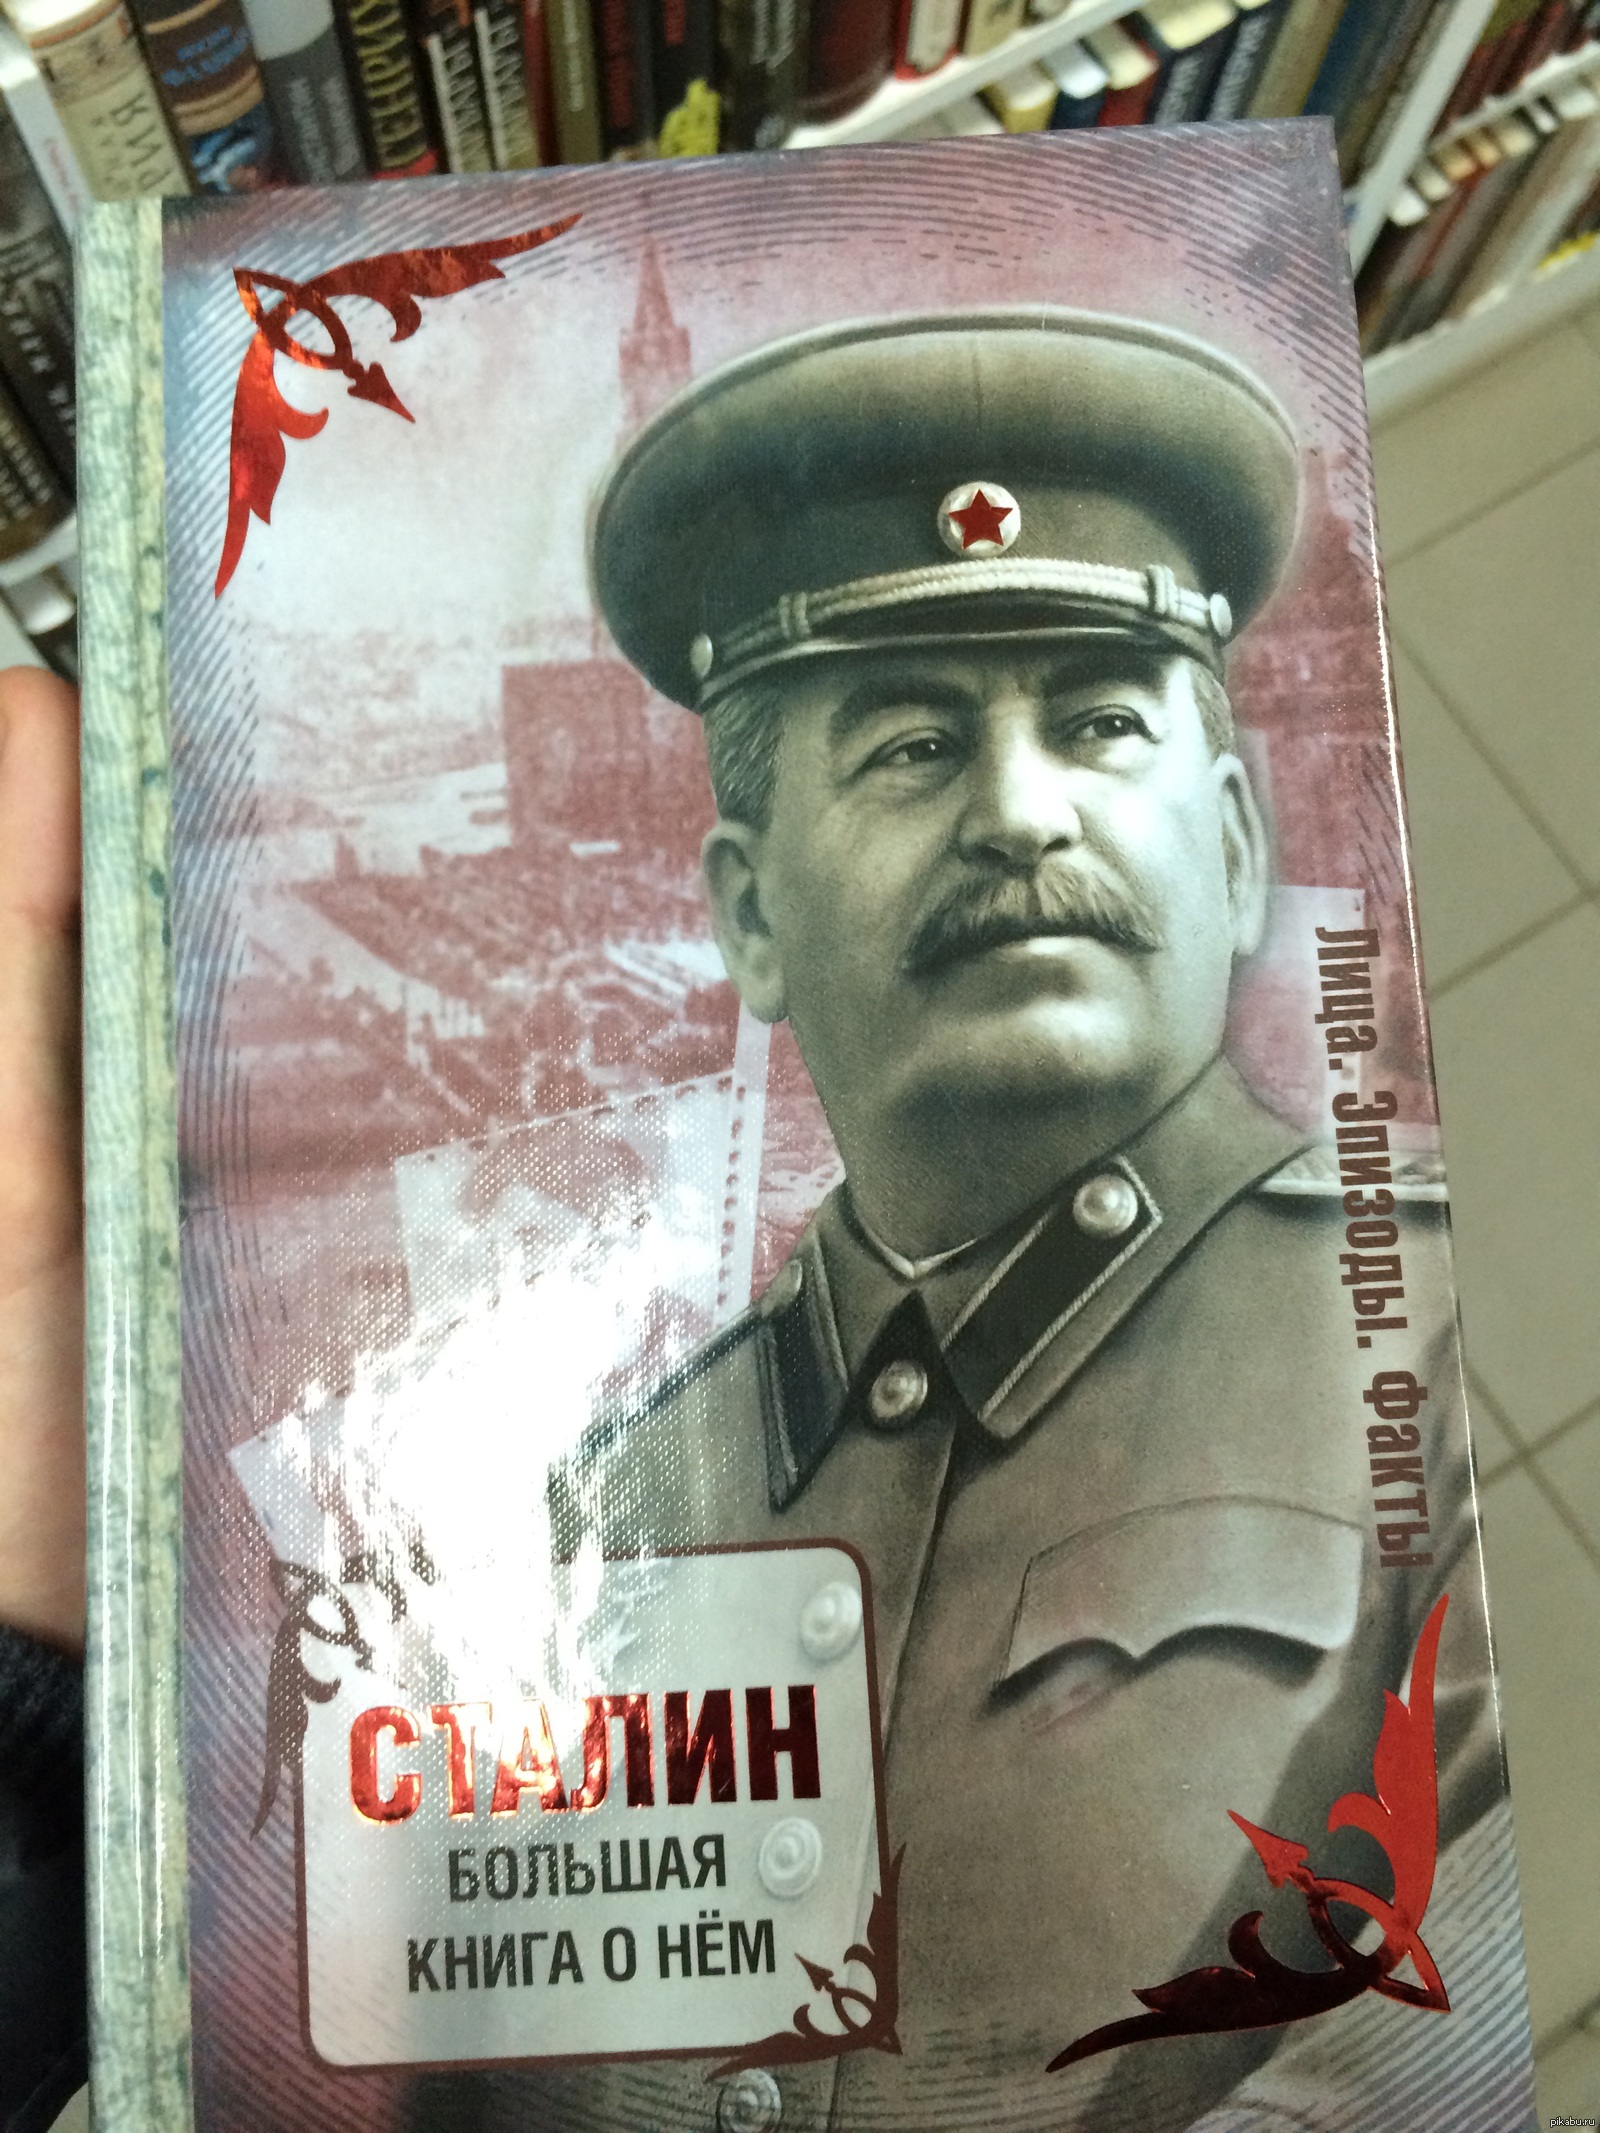 Читать про сталина. Книга про Сталина. Современные романы о Сталине. Спицын Сталин книга. Спицын Сталин.